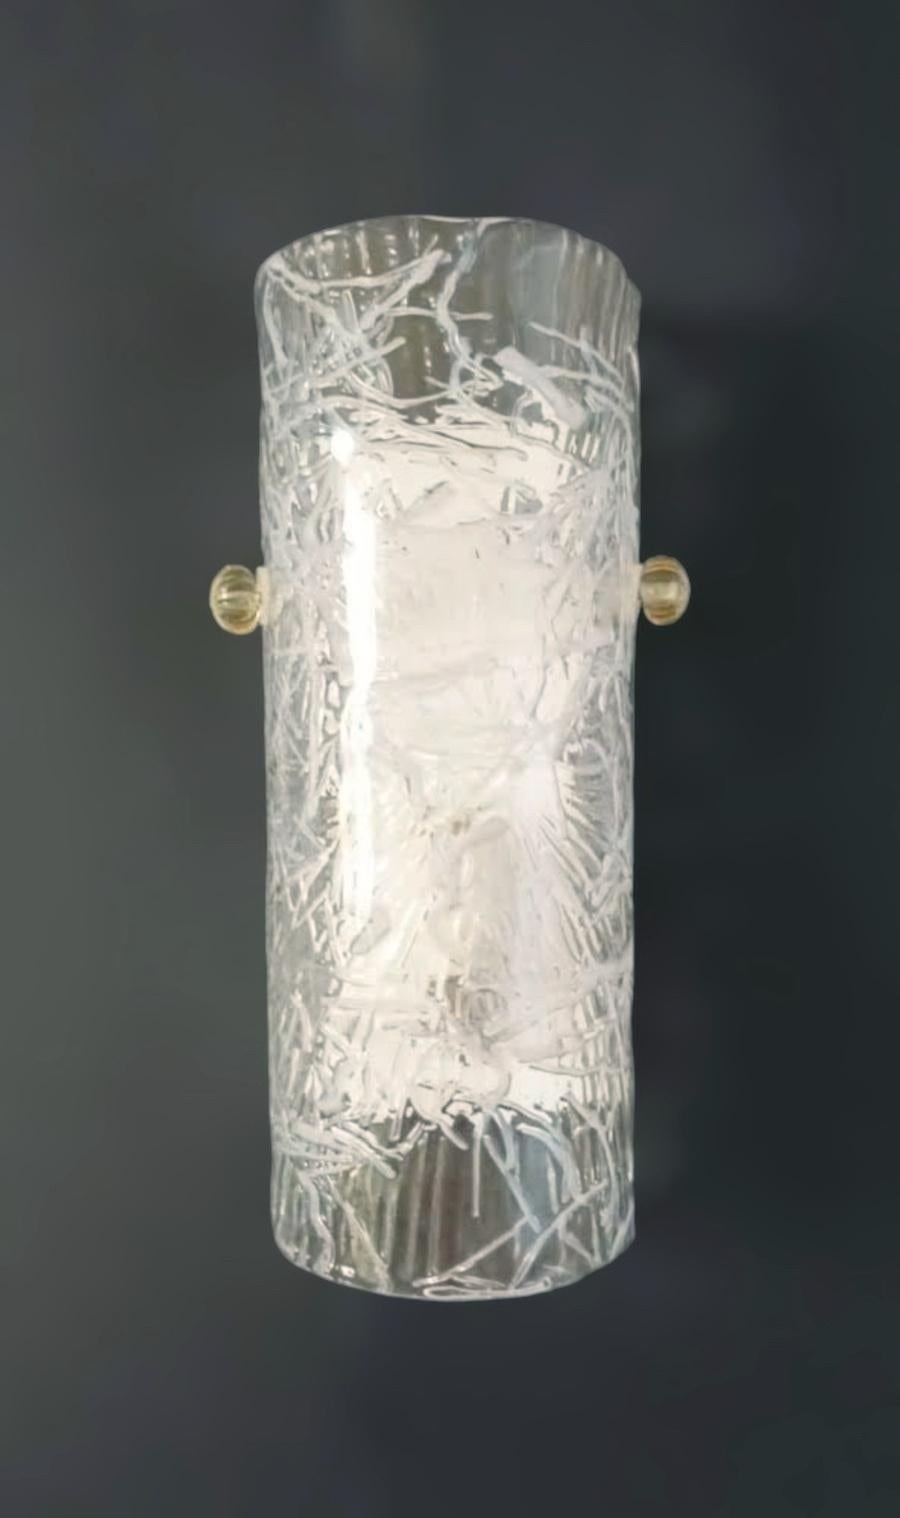 Applique italienne avec un abat-jour cylindrique en verre de Murano de couleur claire avec texture blanche, monté sur une monture en métal blanc / Made in Italy by Mazzega 1970s.
Mesures : Hauteur 12 pouces, largeur 6 pouces, profondeur 3.5 pouces
1